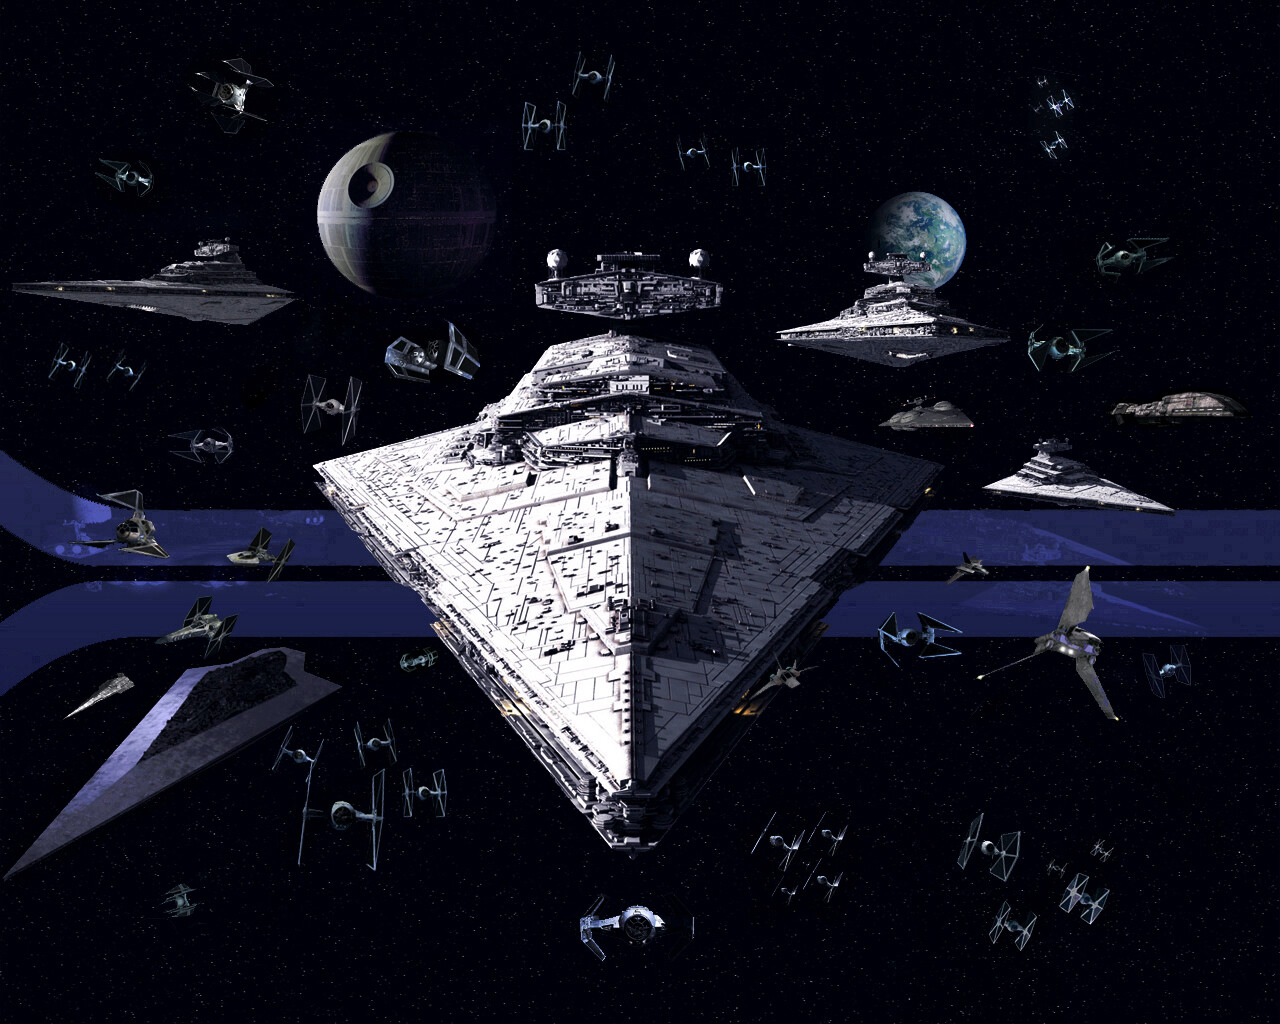 Imperial_Fleet_New_Ships_by_1darthvader.jpg